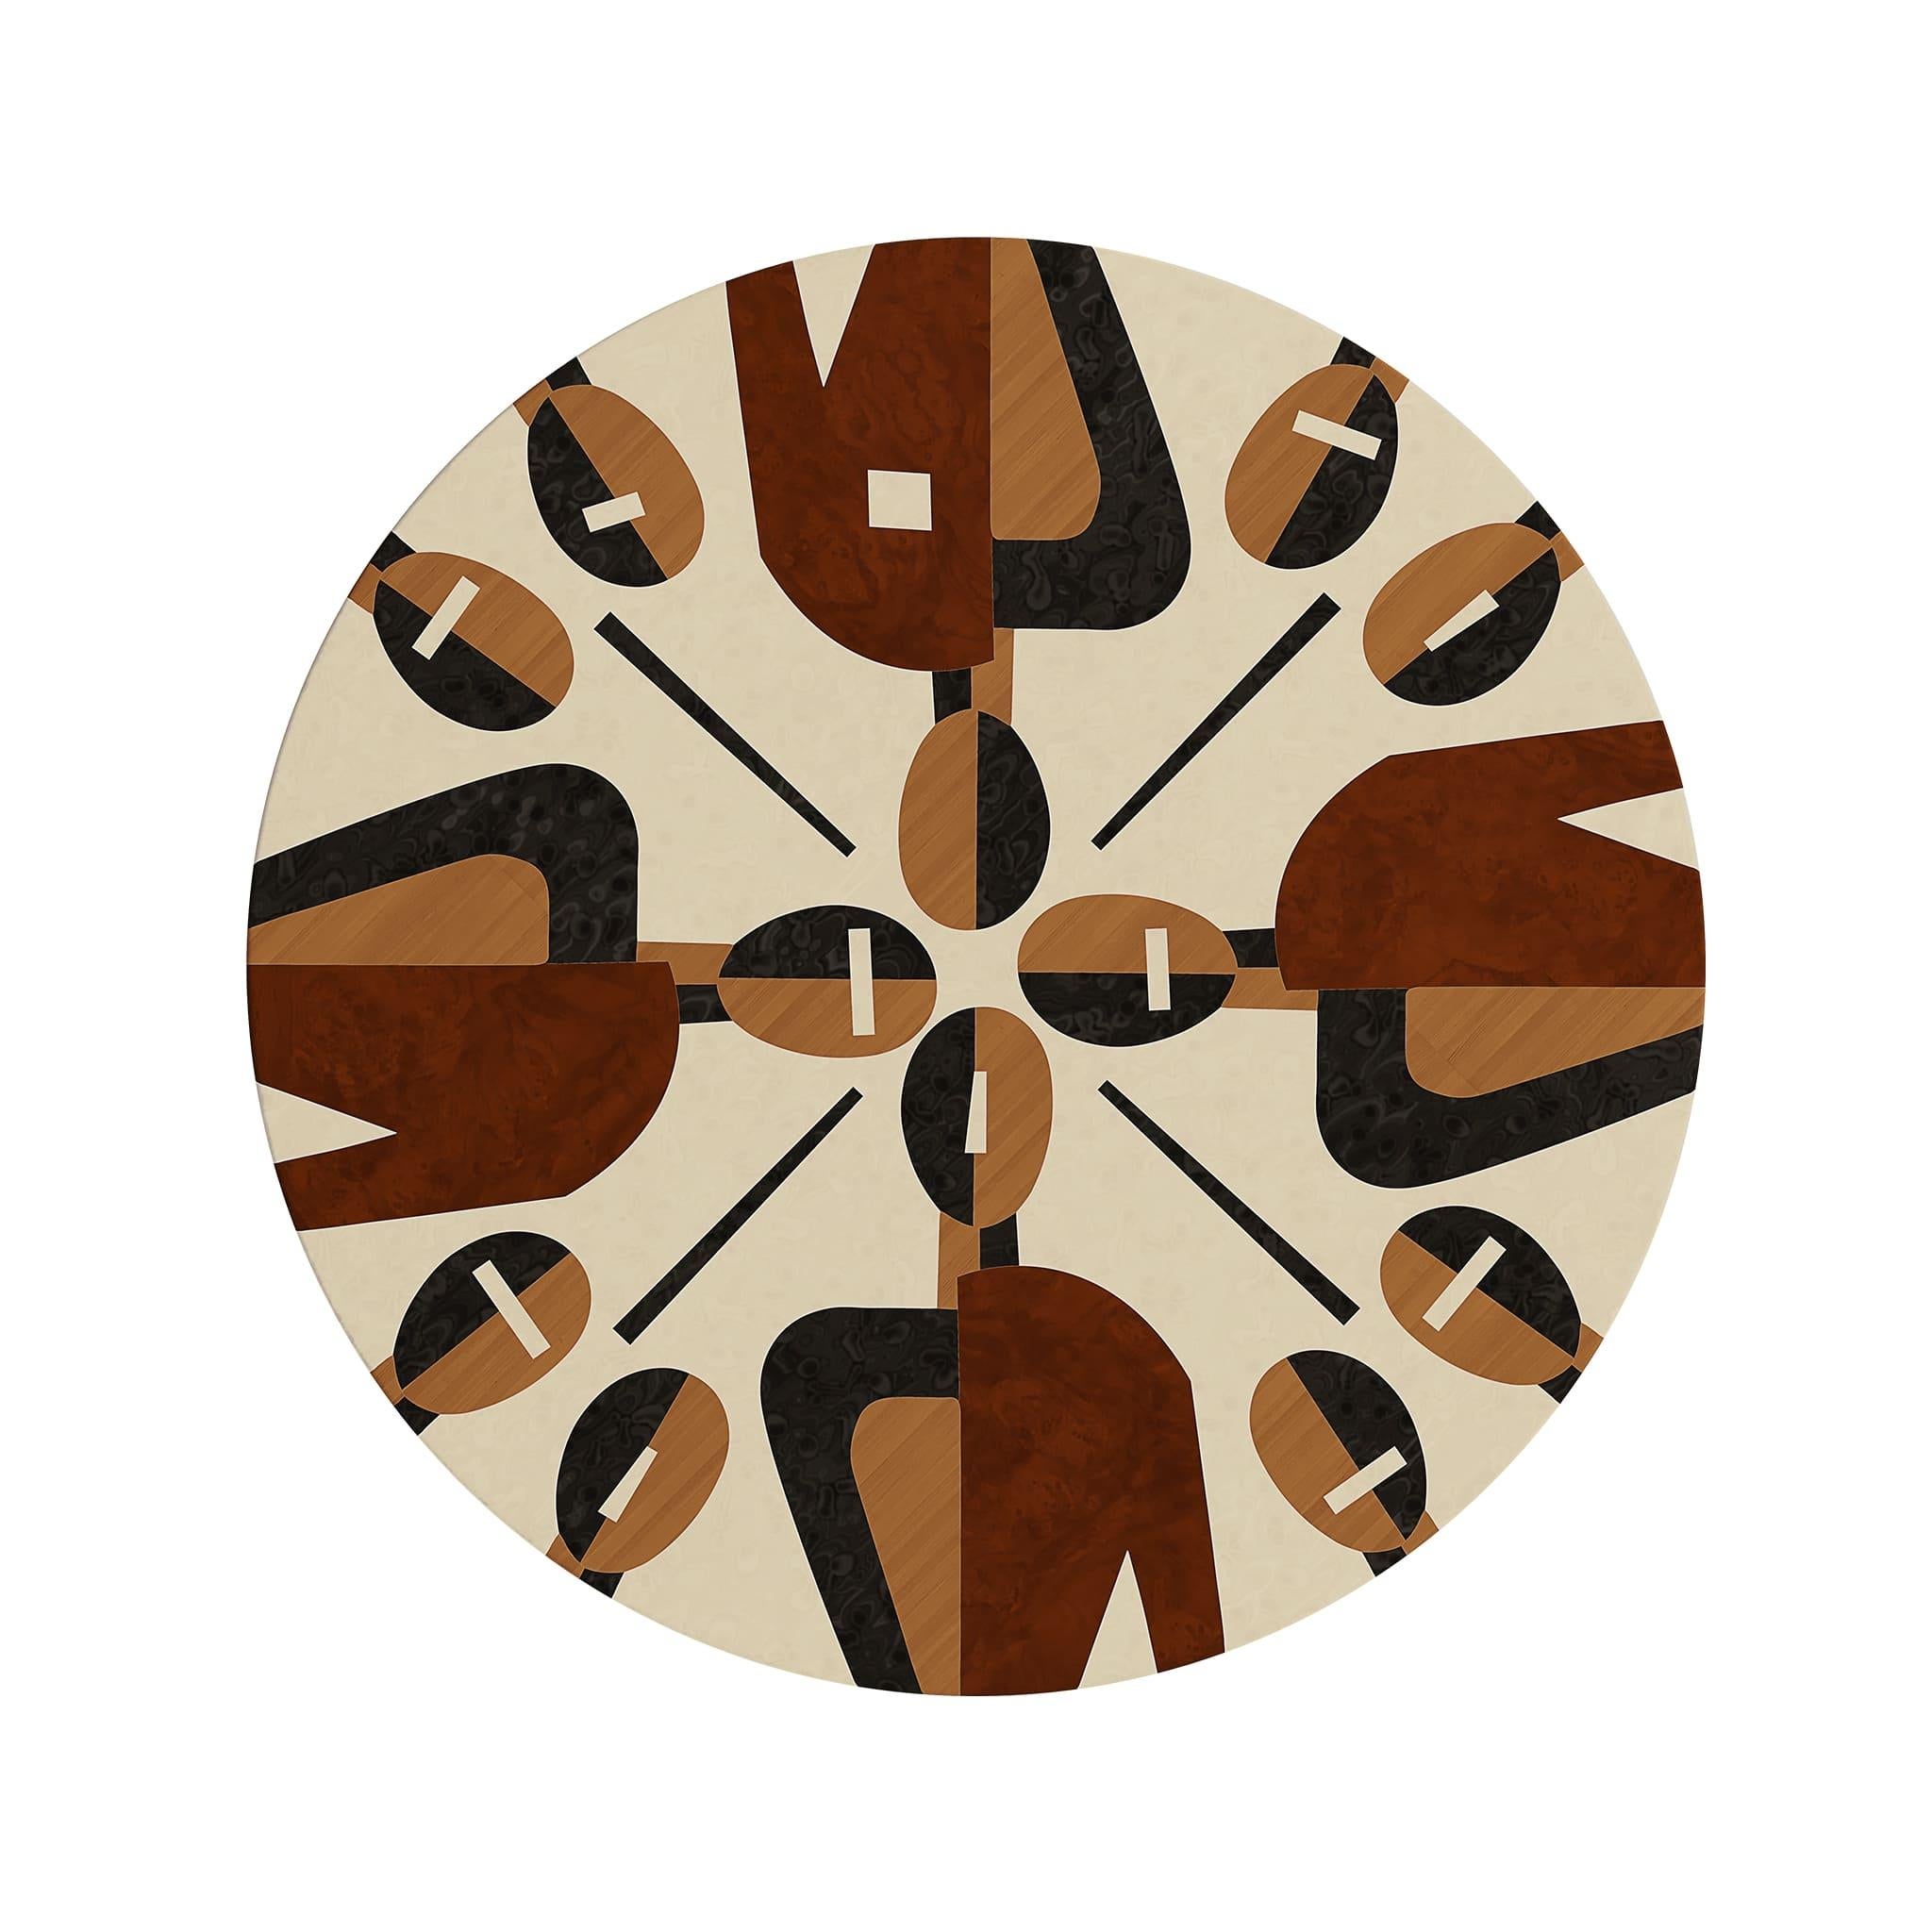 La table de chevet Anya est une pièce qui attire l'attention dans une chambre à coucher moderne, grâce à son motif remarquable et à sa palette chromatique.
Avec ses trois pieds et son tiroir unique, le  La table de chevet s'intégrera de manière